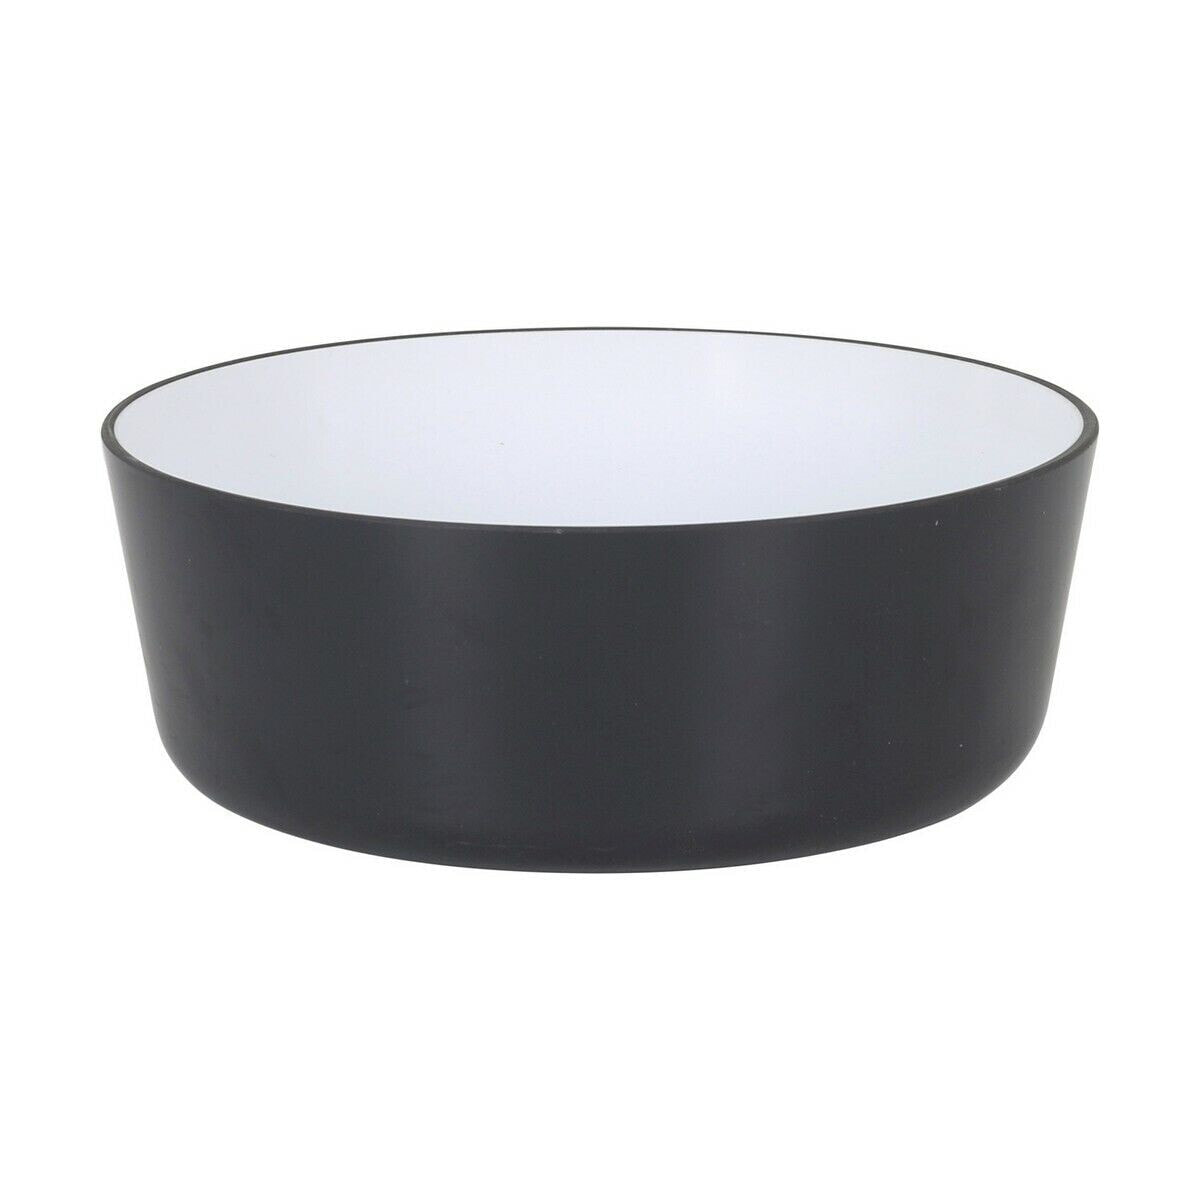 Bowl Inde Melamin White/Black 600 ml 14 x 6 cm